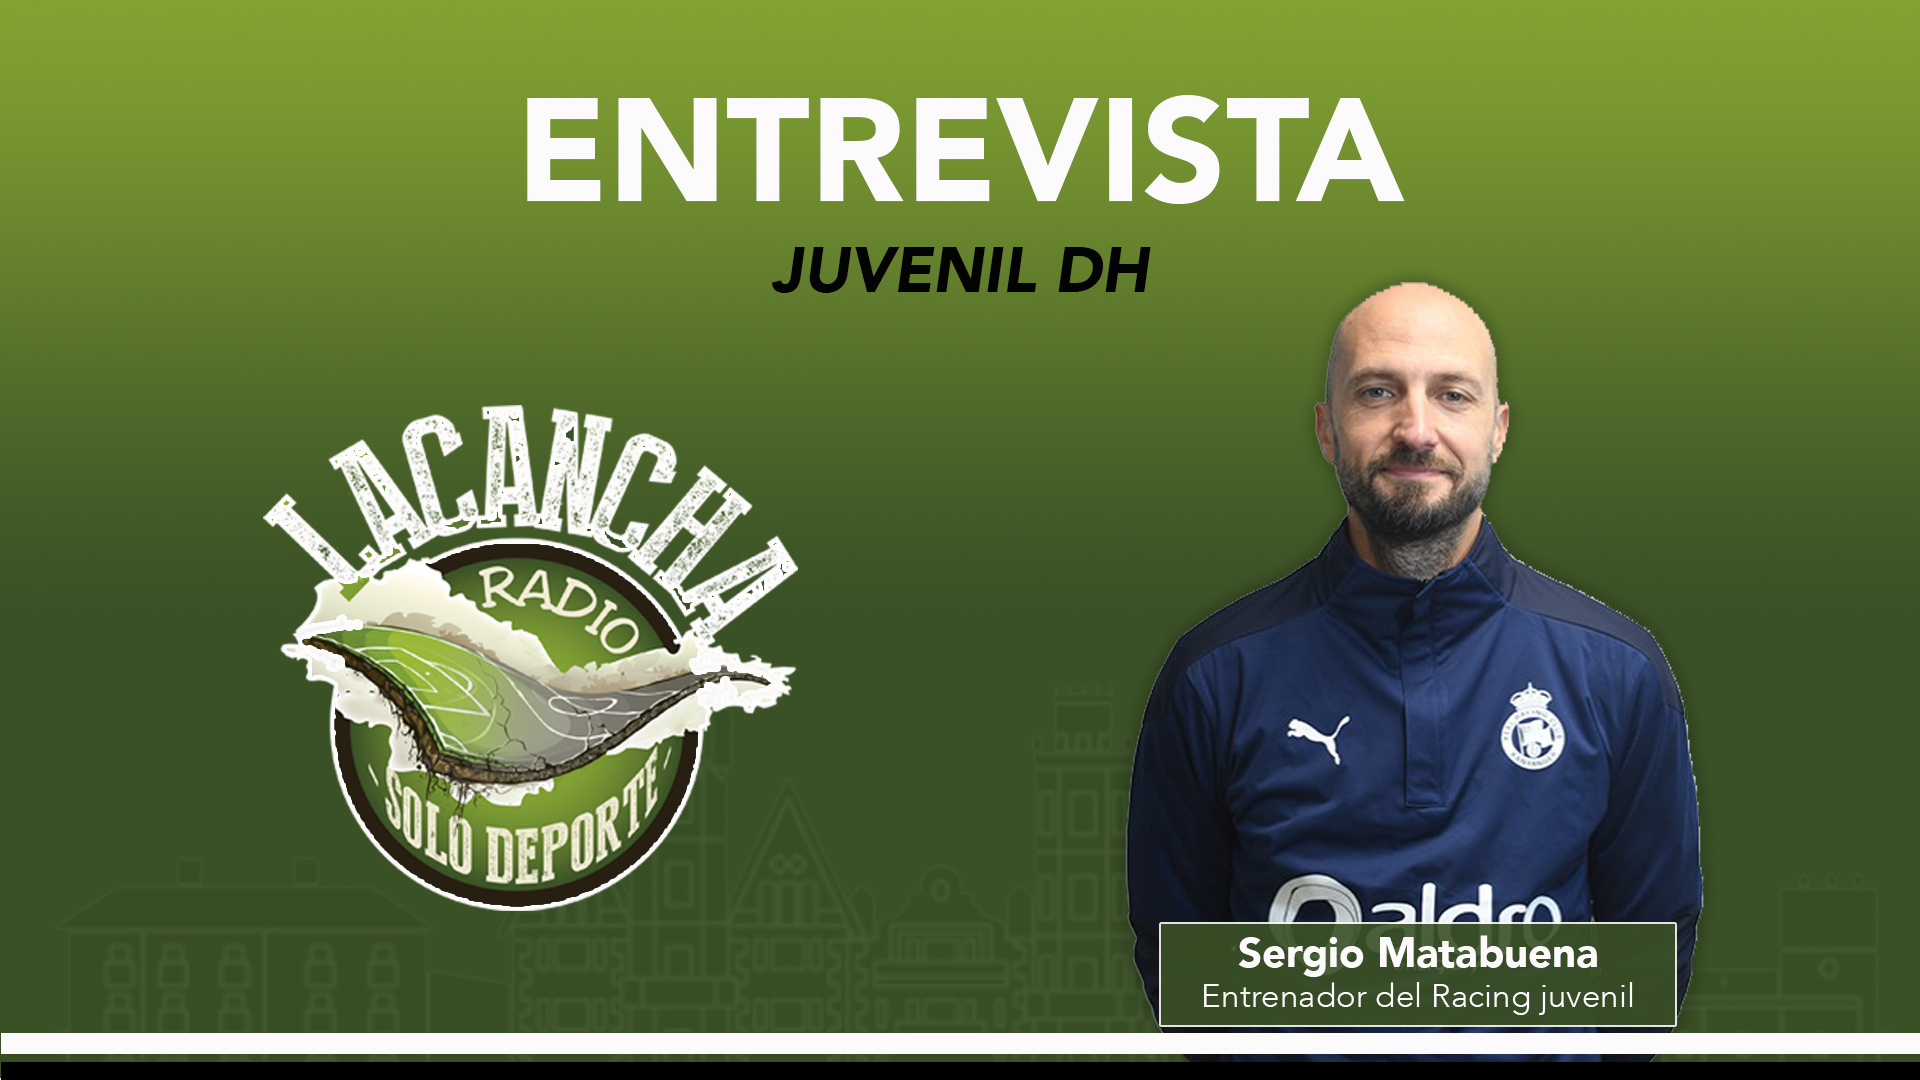 Entrevista con Sergio Matabuena, entrenador del Racing juvenil DH (14/01/2022)